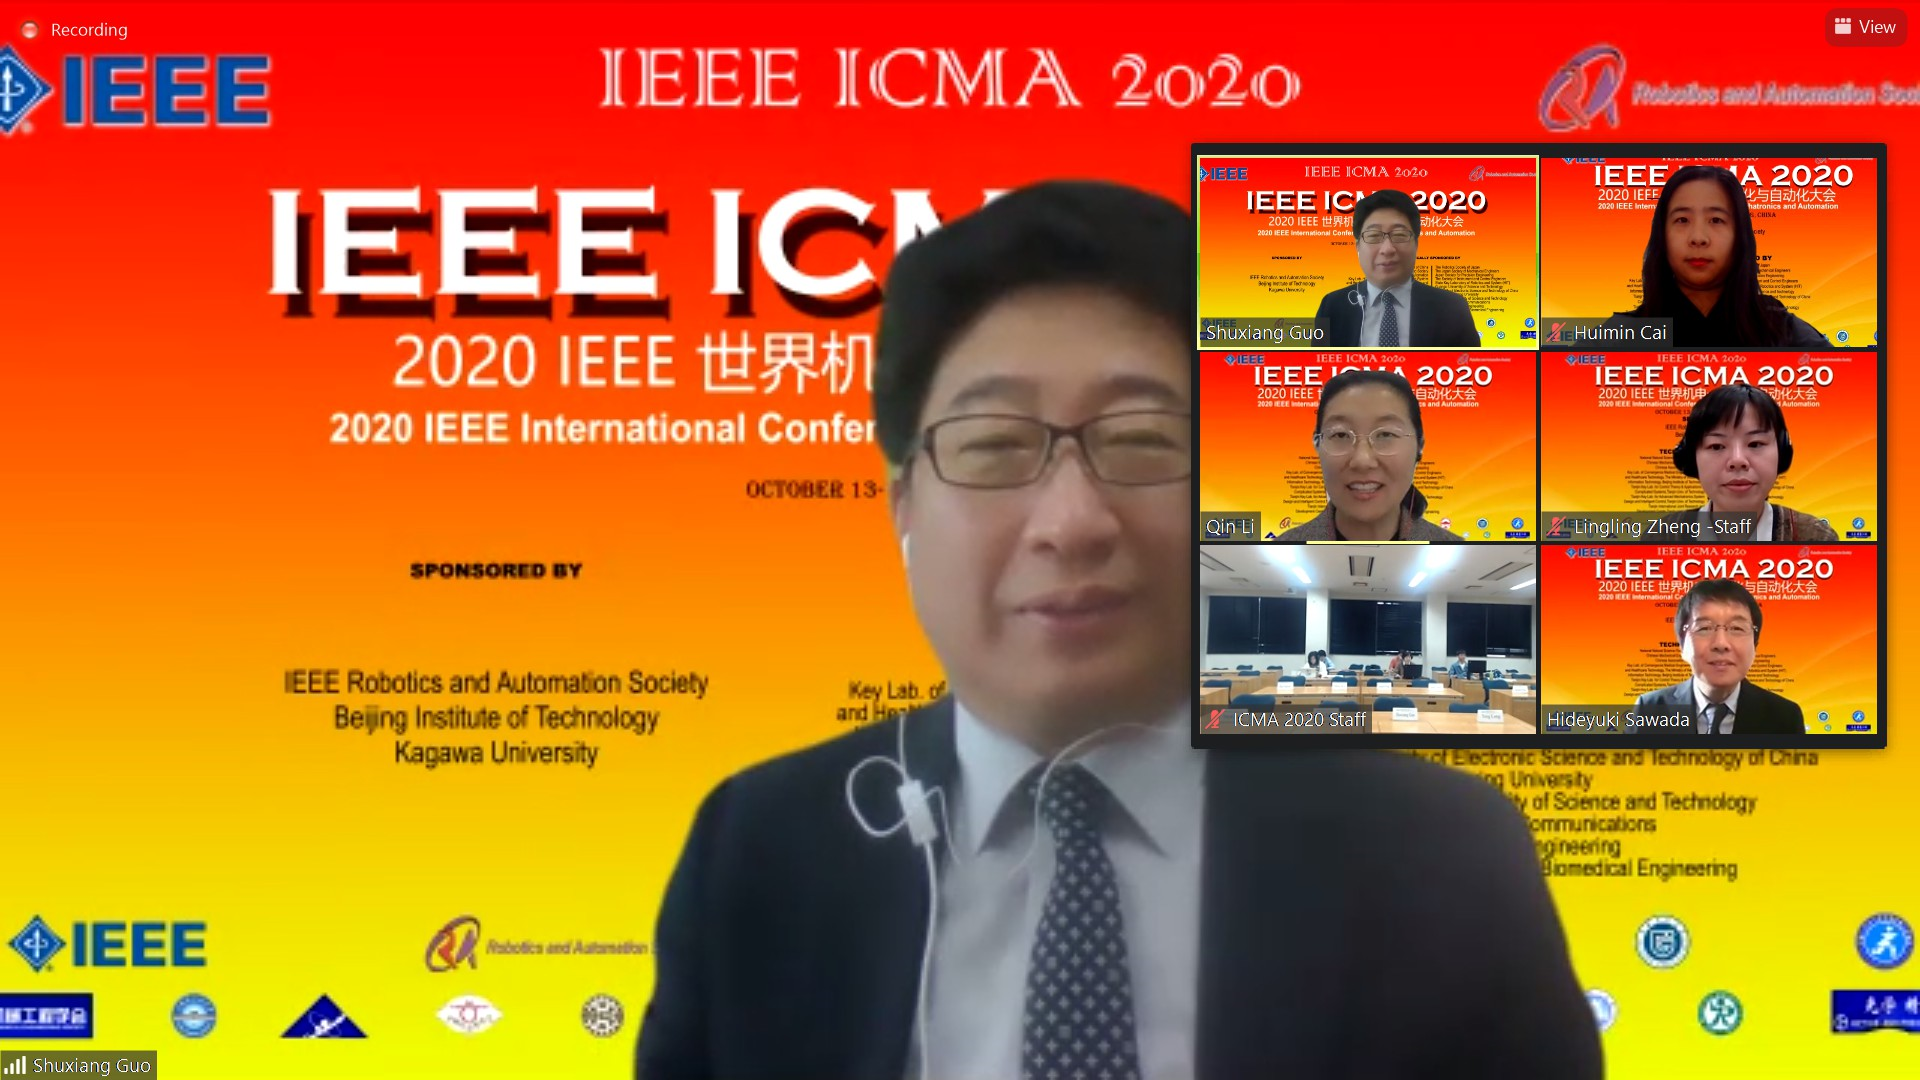 IEEE ICMA 2020国際会議の基調講演の司会を務める郭教授